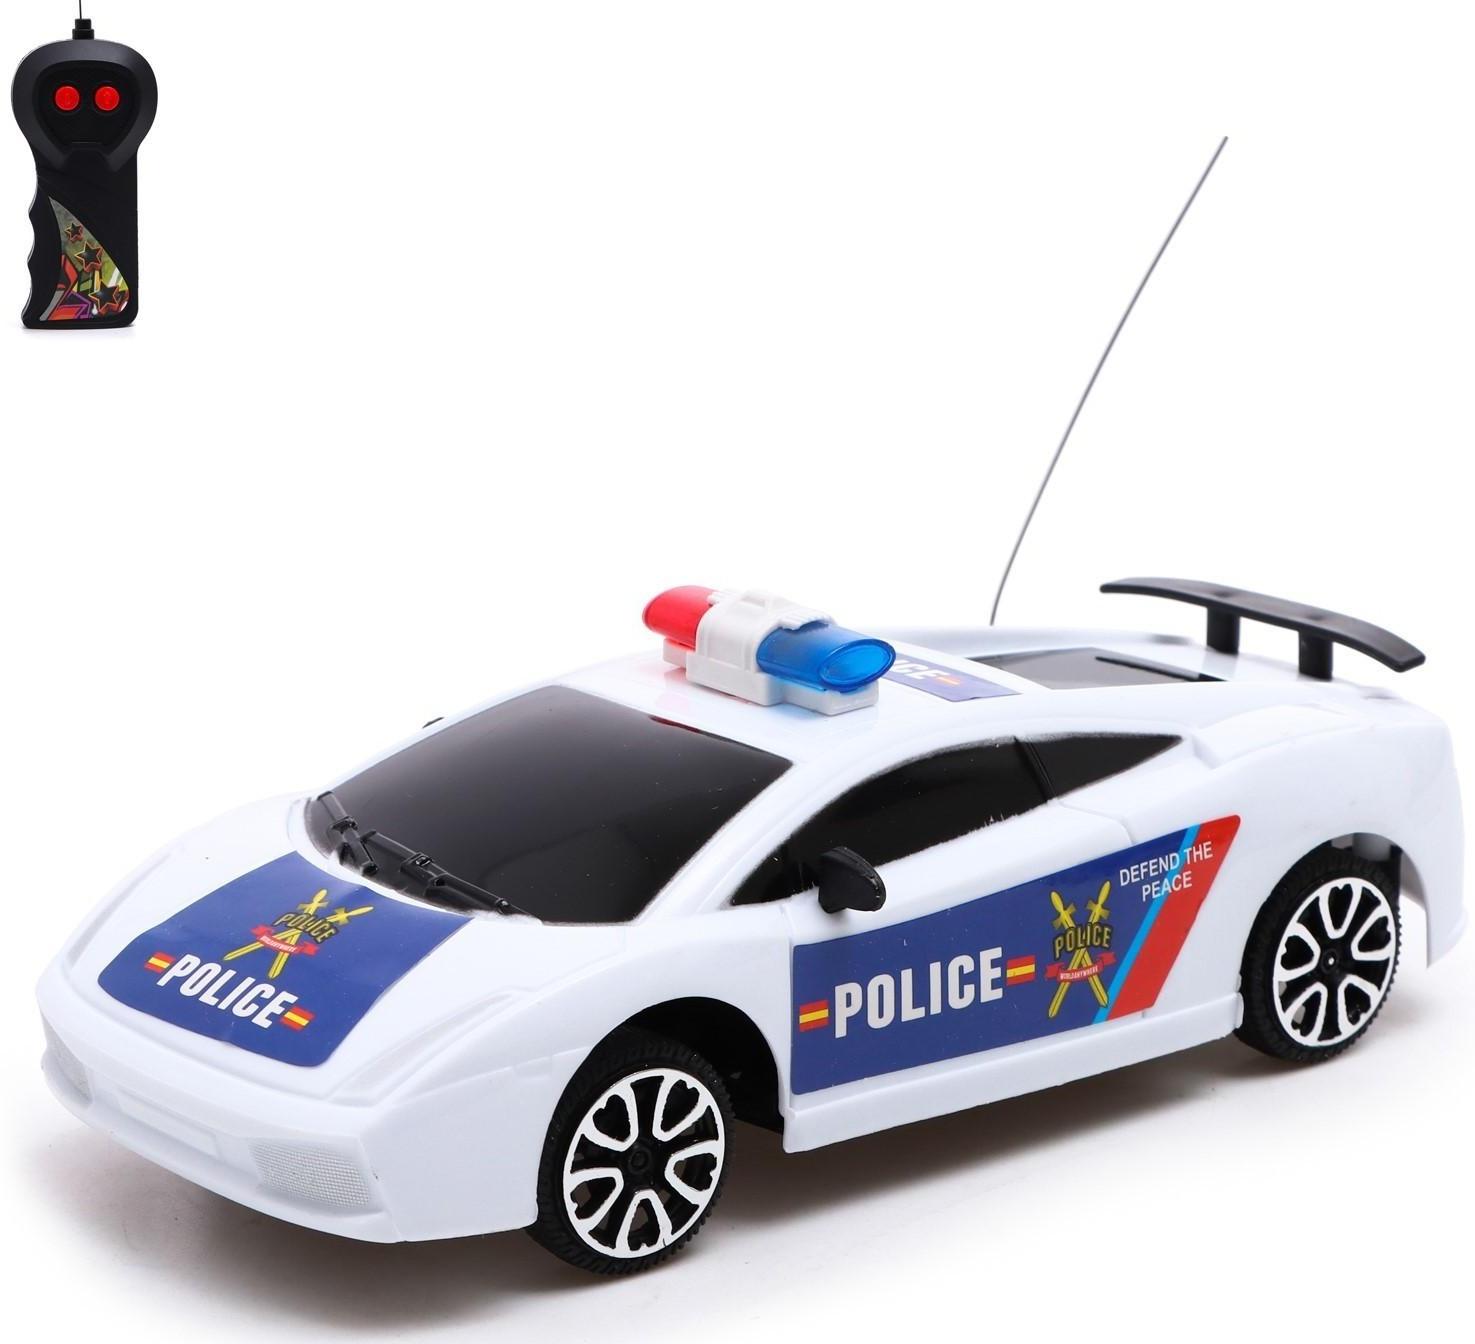 Машина радиоуправляемая «Полицейский патруль», работает от батареек, цвет бело-синий